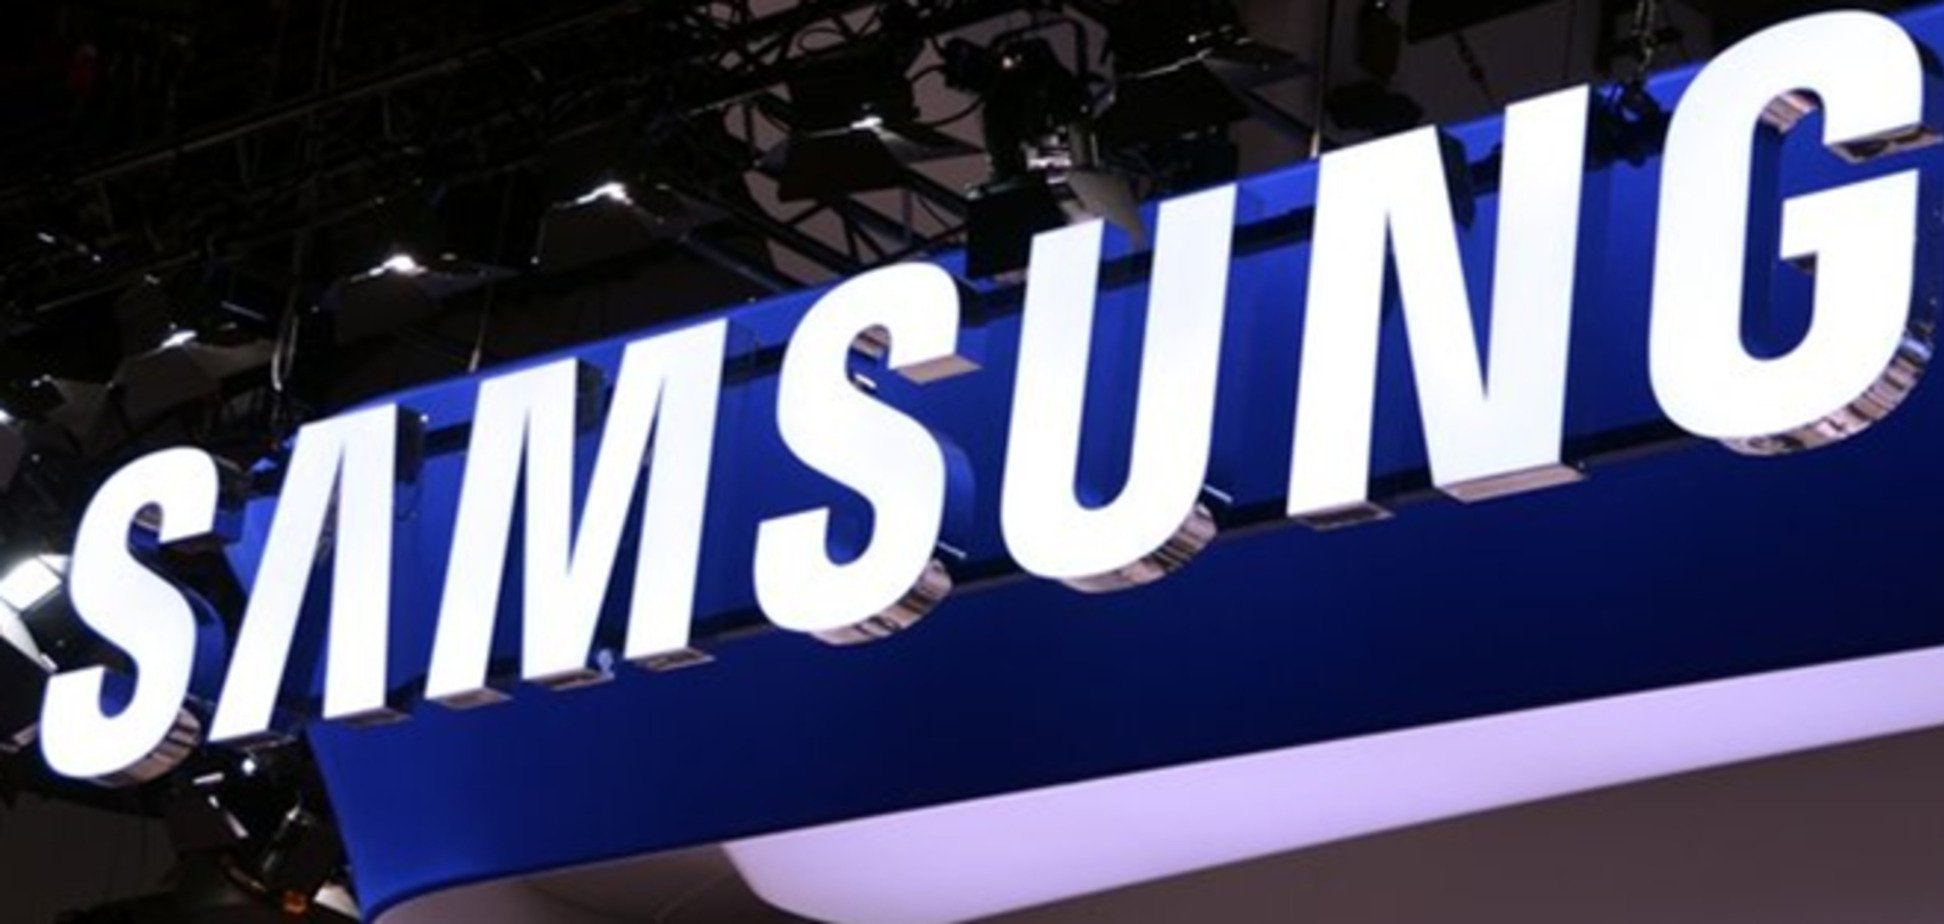 Samsung обошла Apple по объемам продаж смартфонов